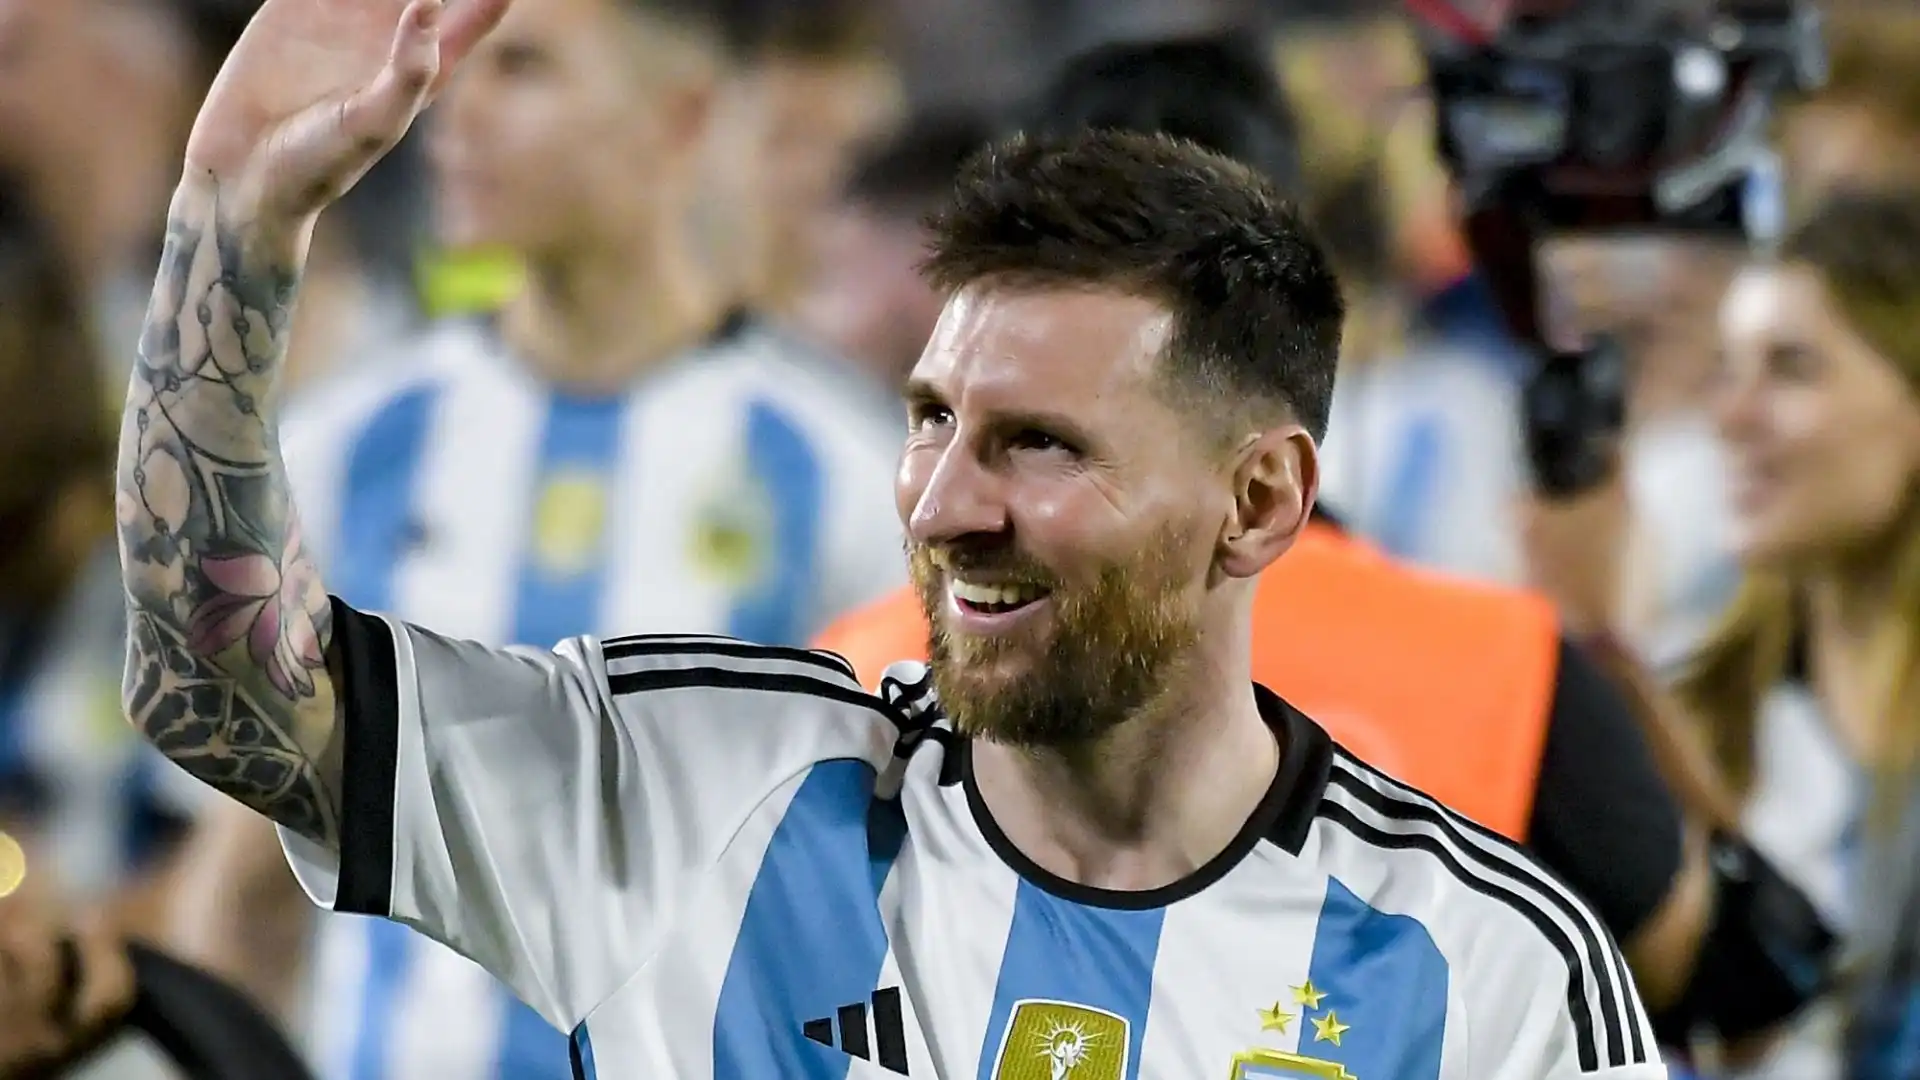 L'attaccante argentino, secondo i rumors, guadagnerà uno stipendio incredibile: 400 milioni di euro a stagione